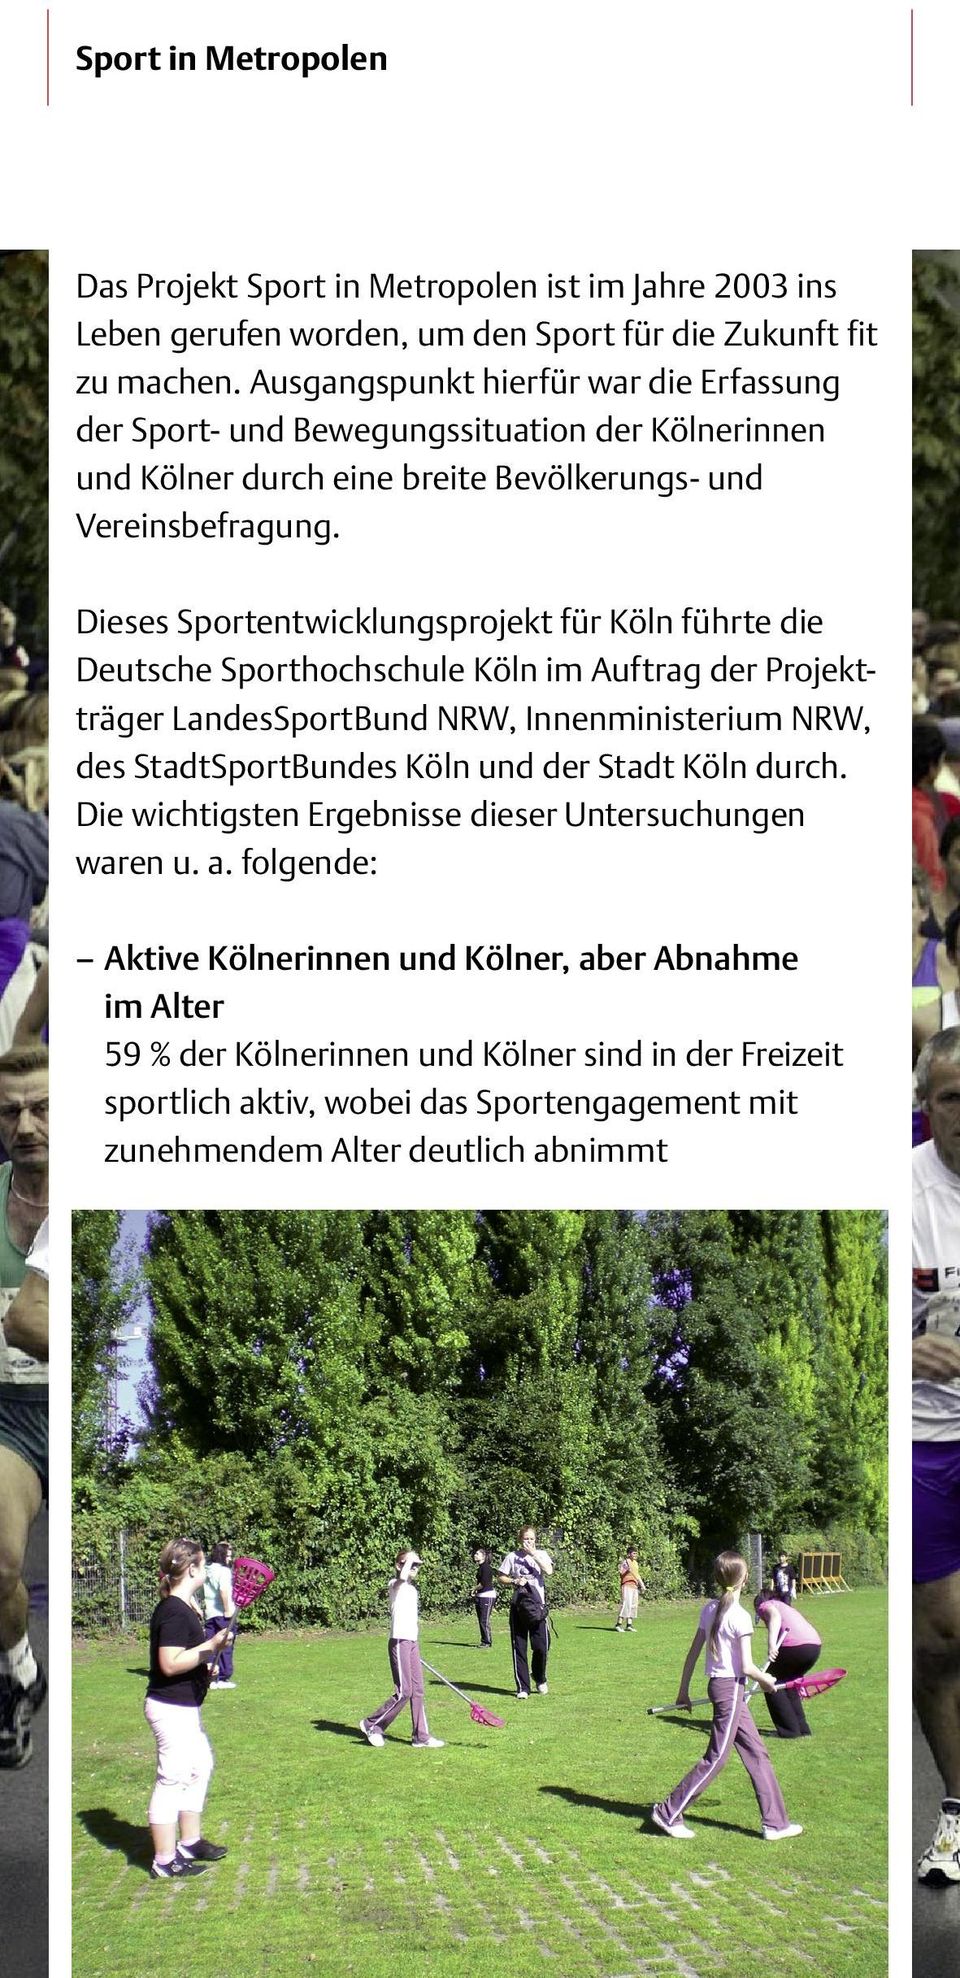 Dieses Sportentwicklungsprojekt für Köln führte die Deutsche Sporthochschule Köln im Auftrag der Projektträger LandesSportBund NRW, Innenministerium NRW, des StadtSportBundes Köln und der